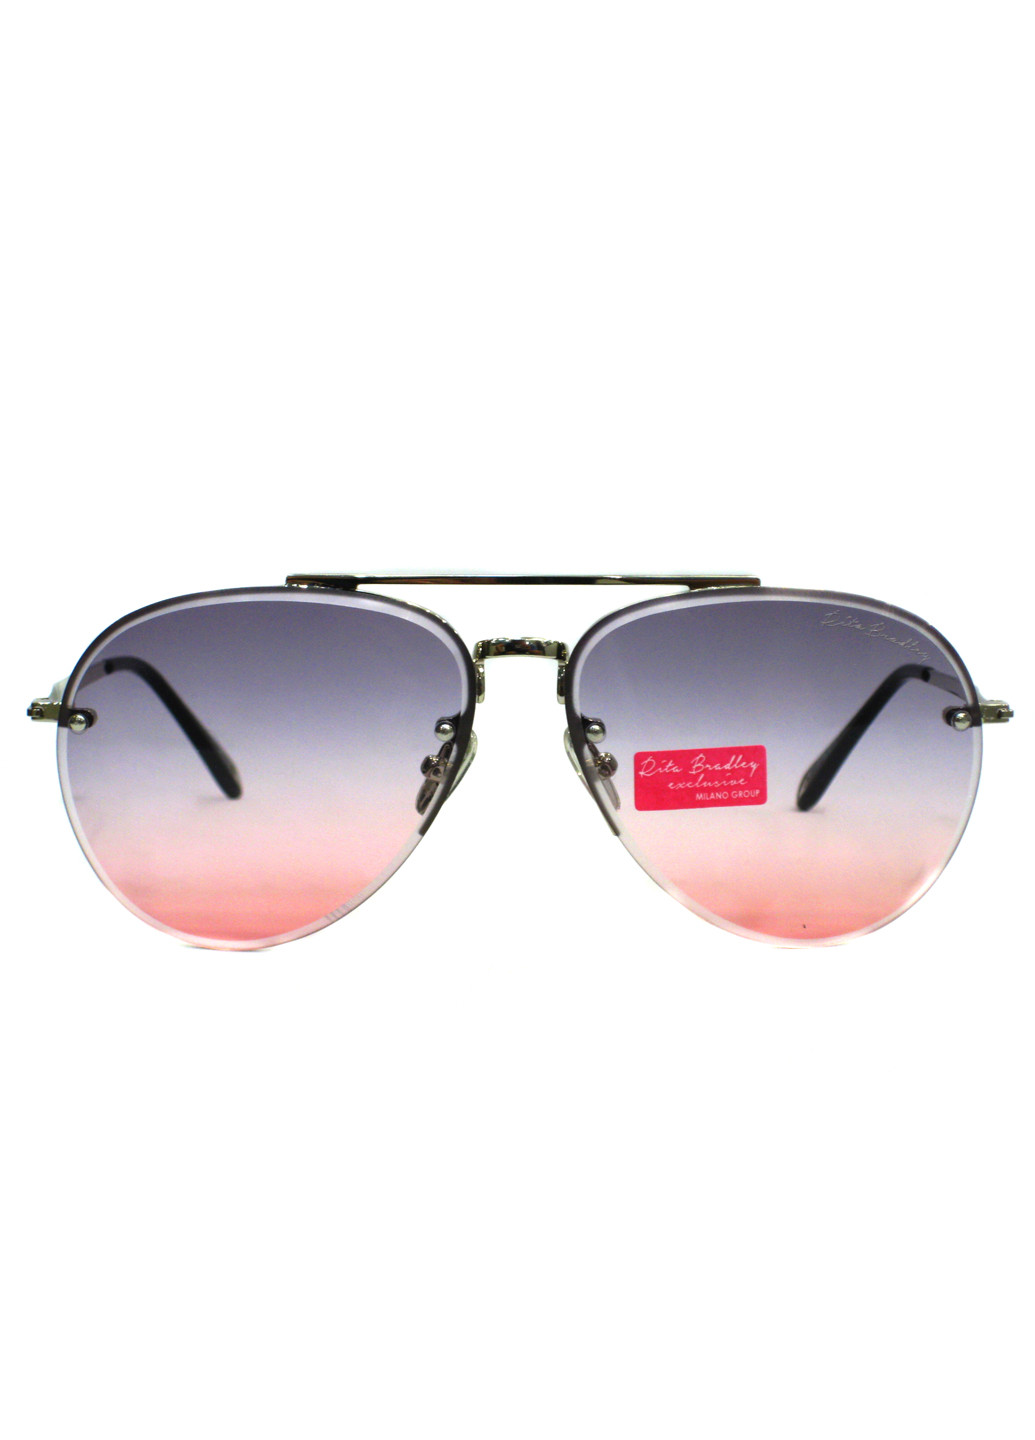 Cолнцезащитные очки Rita Bradley rb3119 c5 (194585341)